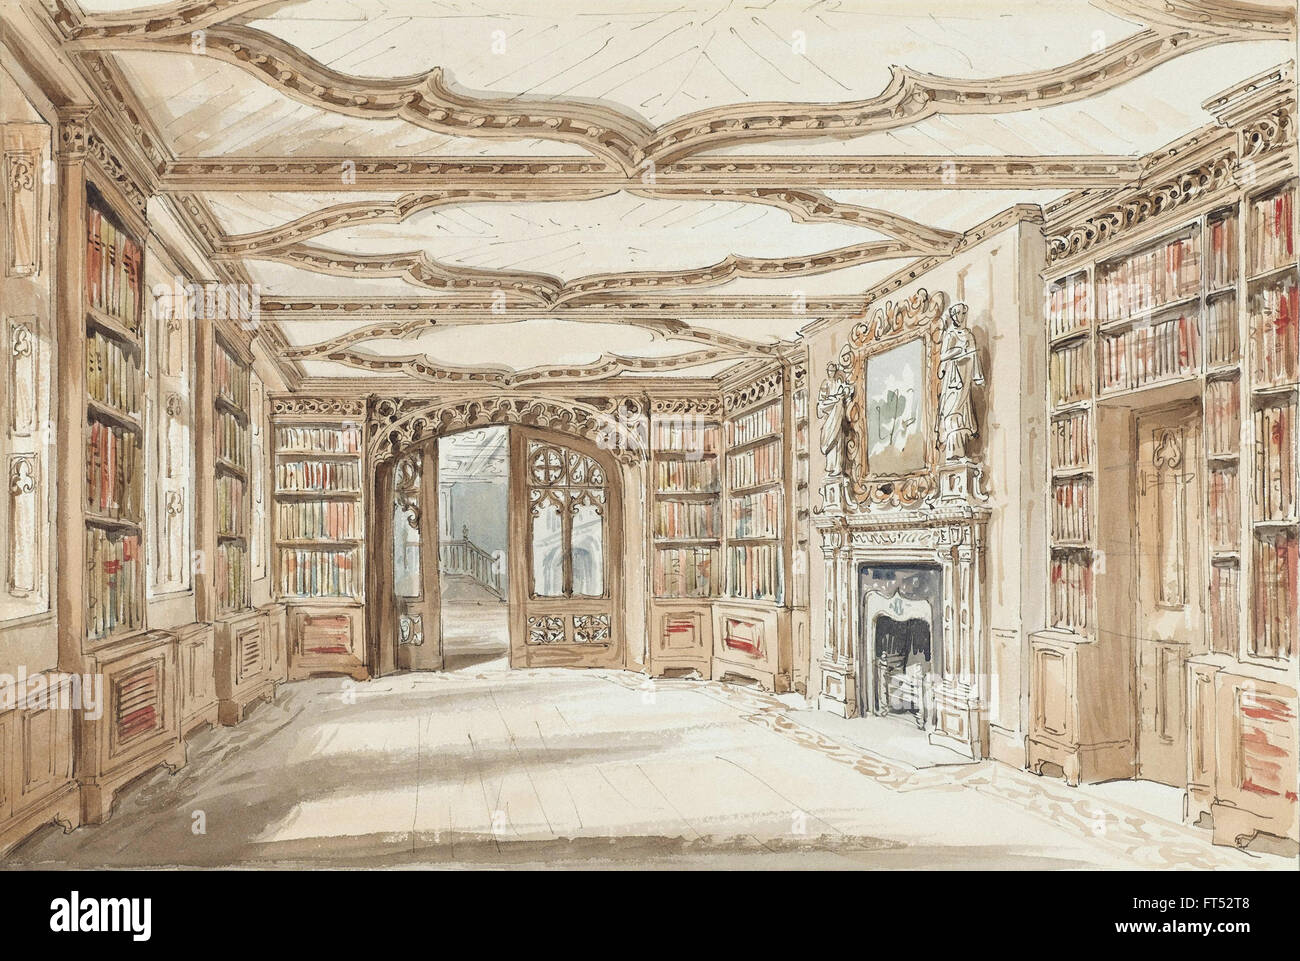 Charles James Richardson - Innenansicht einer Bibliothek im gotischen Stil - Cooper-Hewitt National Design Museum Stockfoto